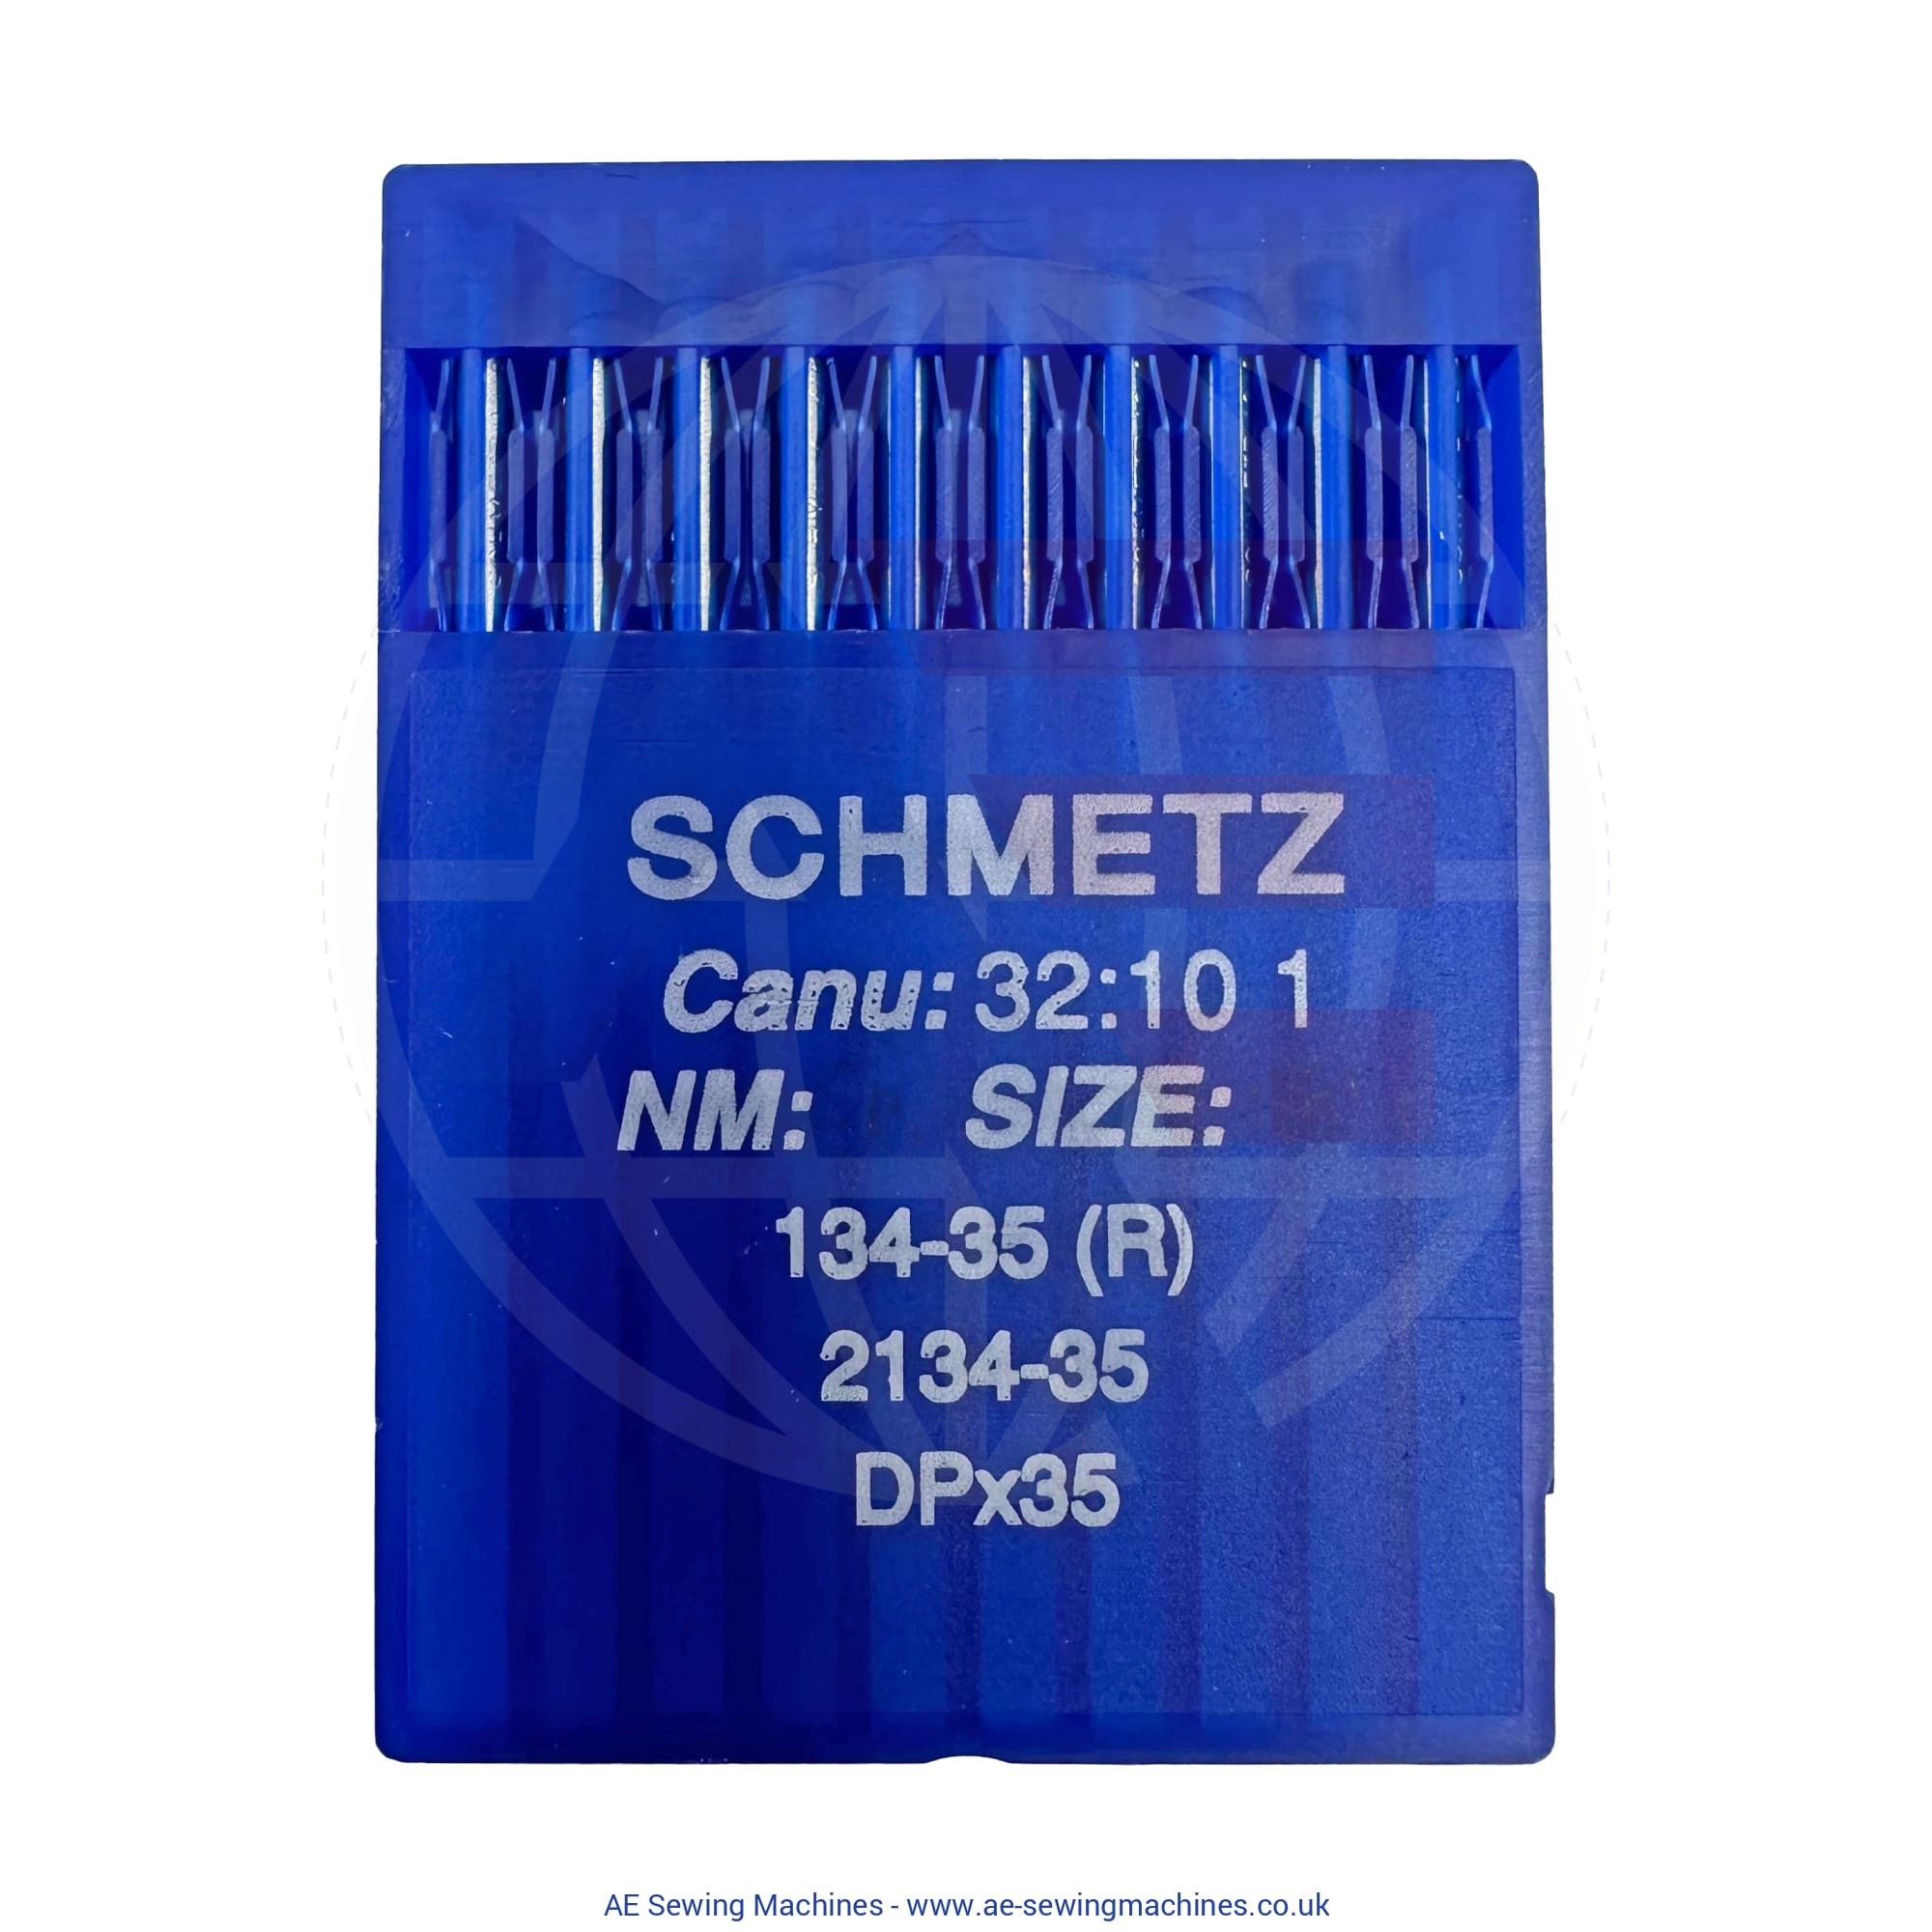 Schmetz 134-35 Regular Point Needles Sewing Machine